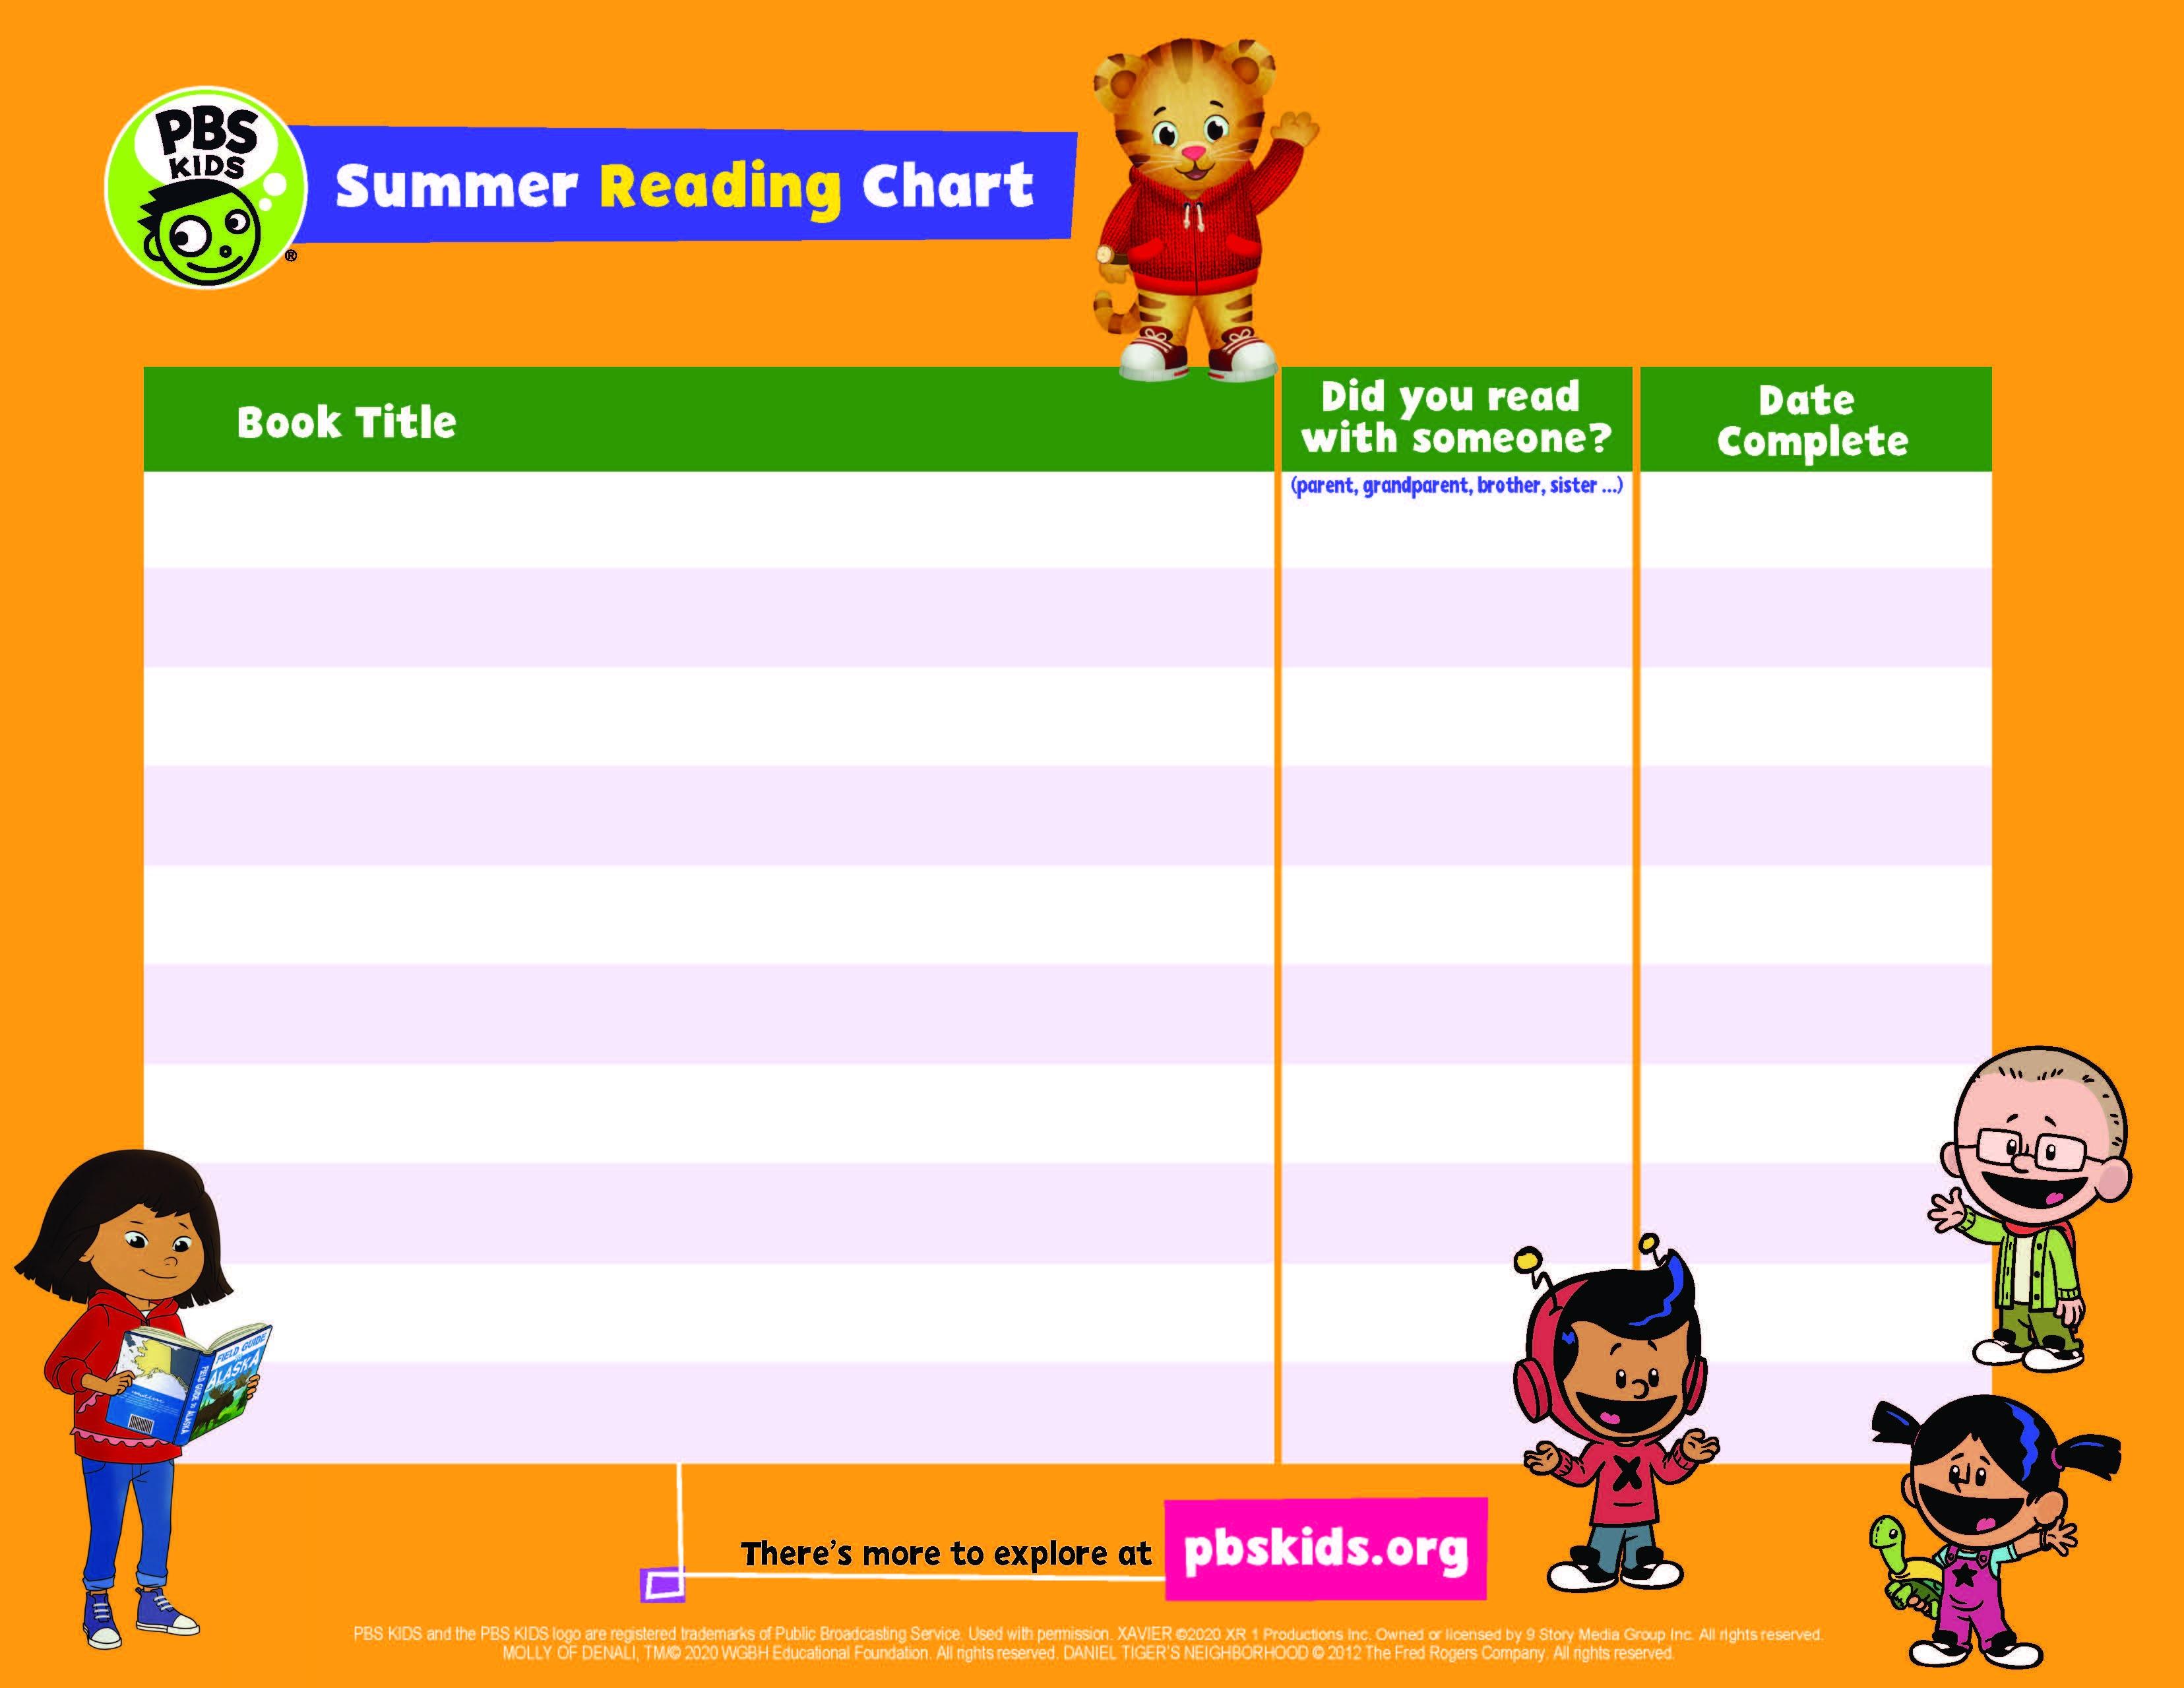 PBS KIDS Summer Reading Chart